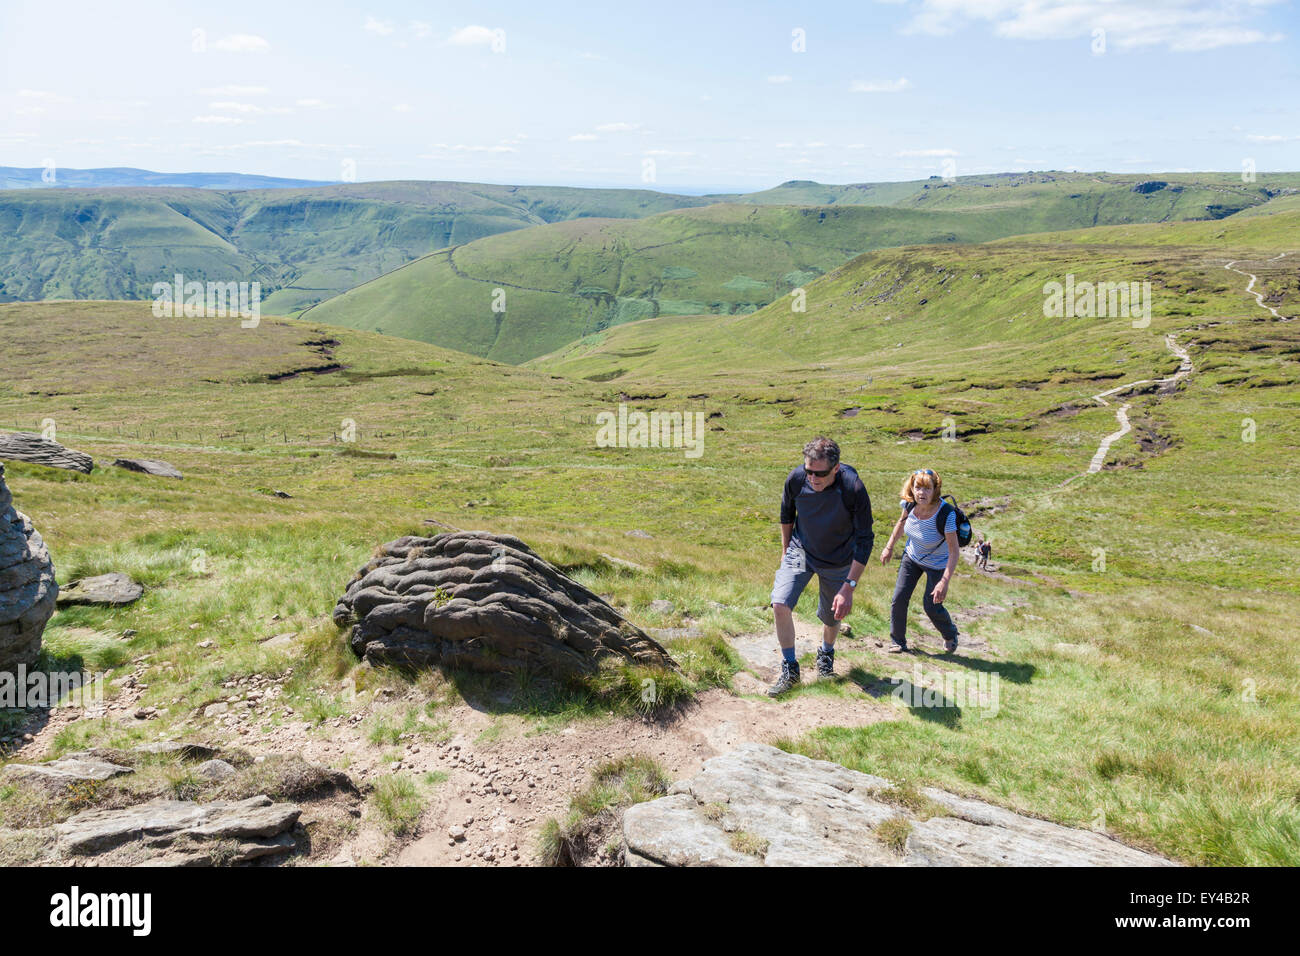 Les gens de la randonnée, la campagne britannique en été. Deux randonneurs marche vers le haut de la colline à Grindslow Knoll sur Kinder Scout, Derbyshire Peak District, England, UK Banque D'Images